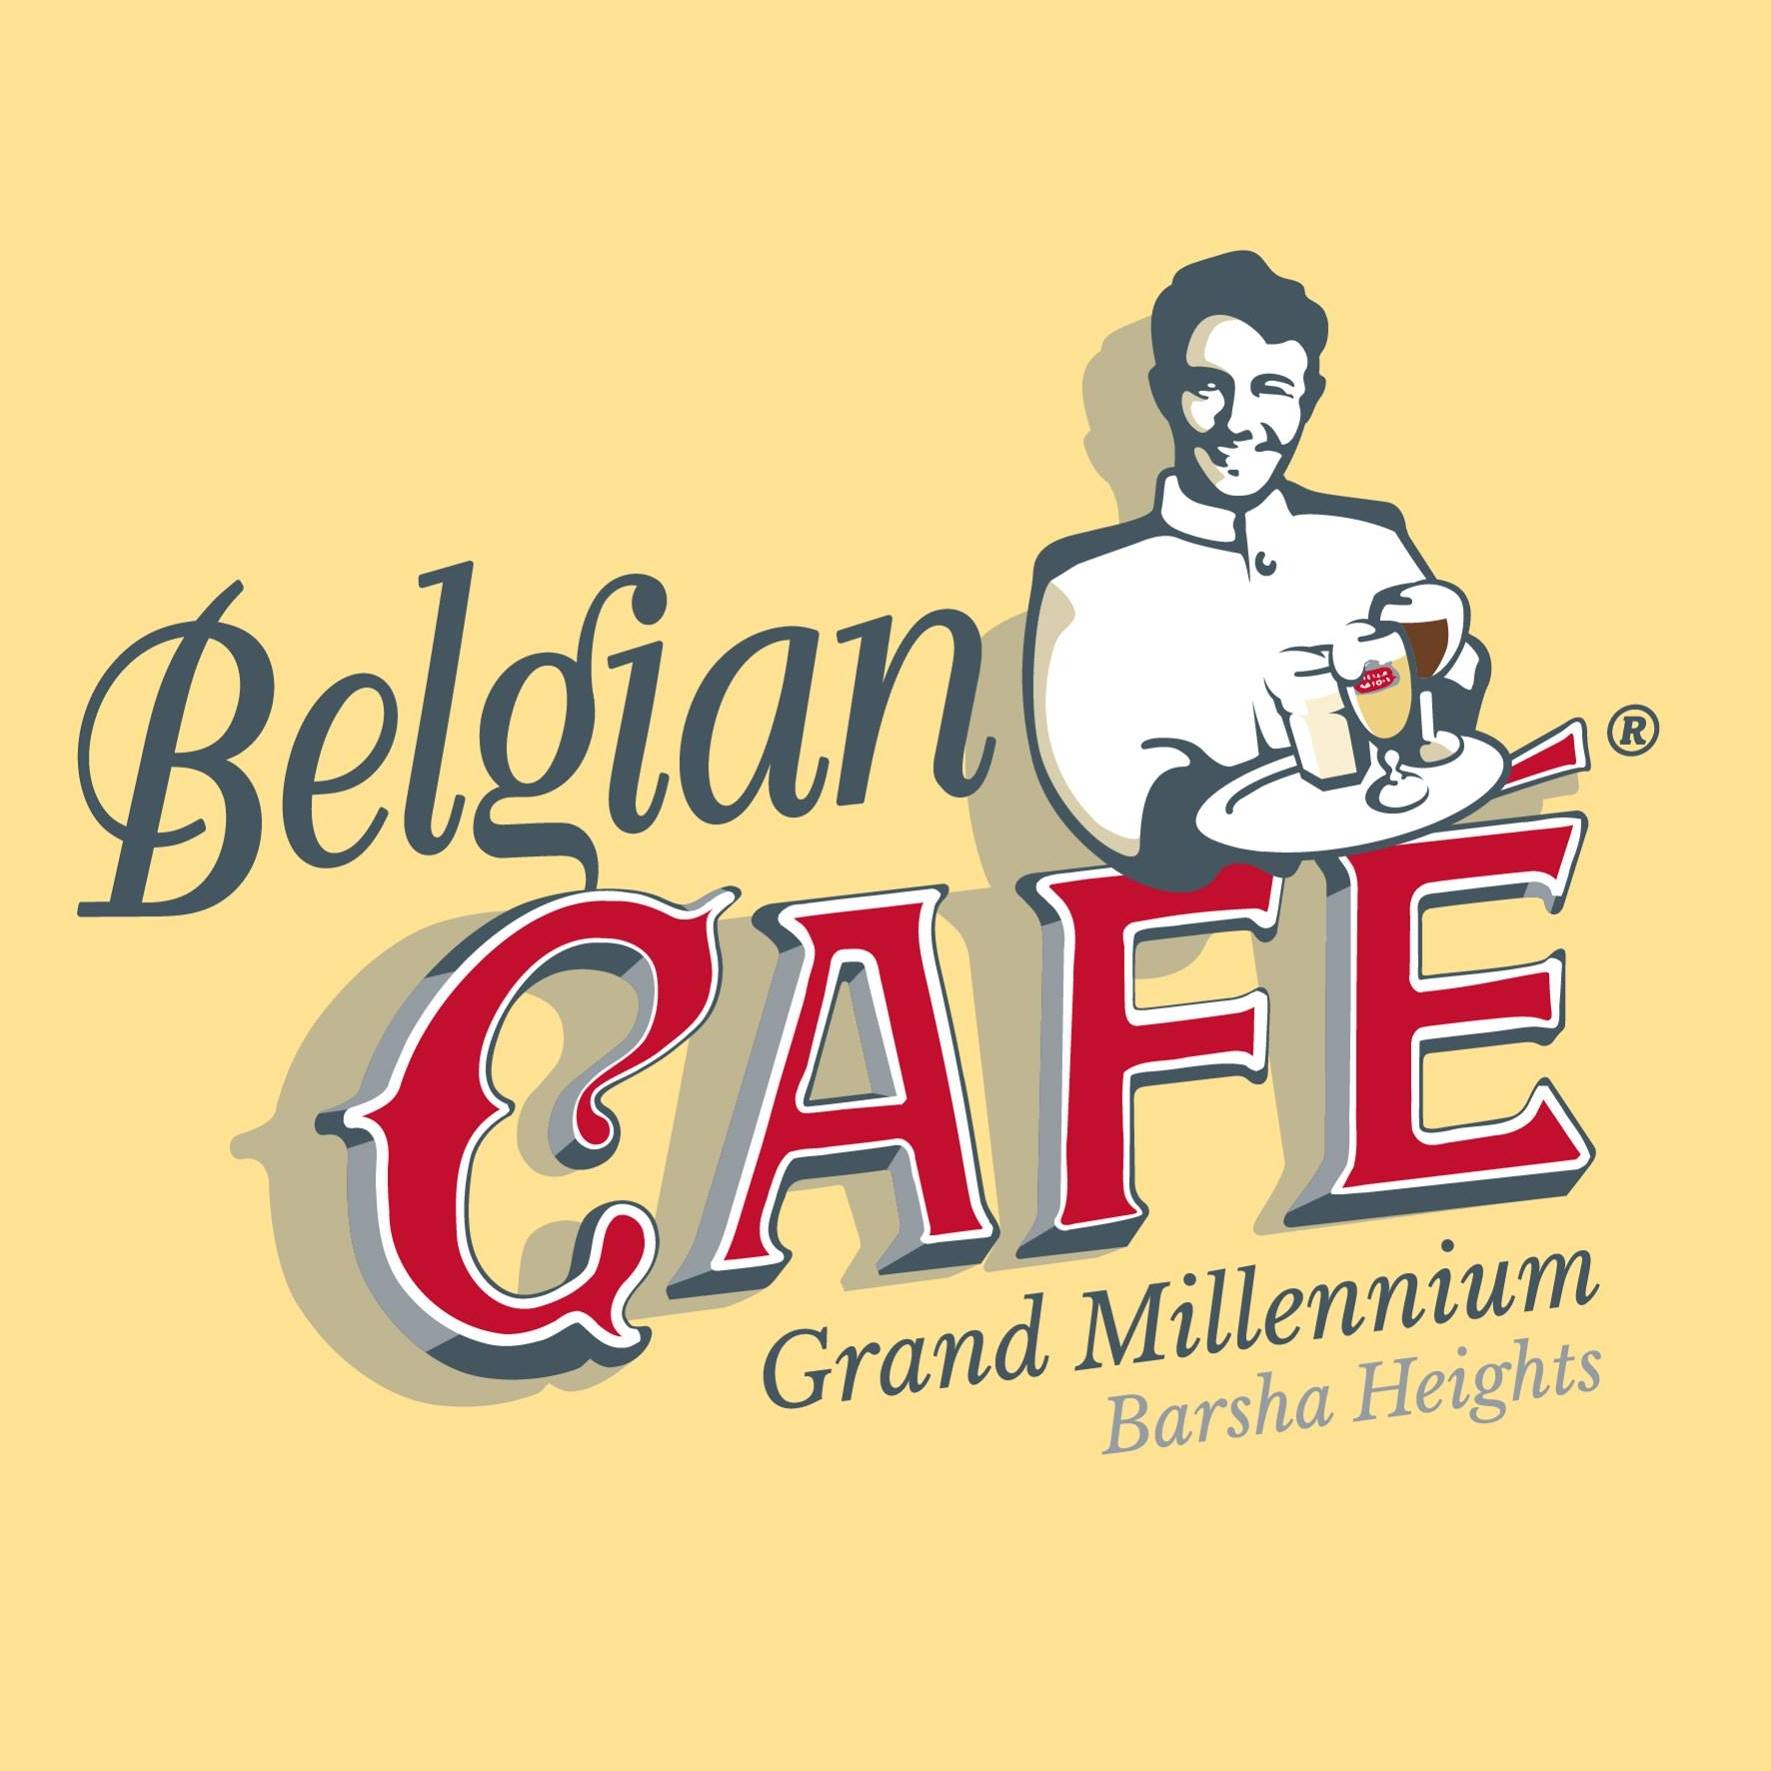 Belgian Café, Barsha Heights in Barsha Heights (TECOM)